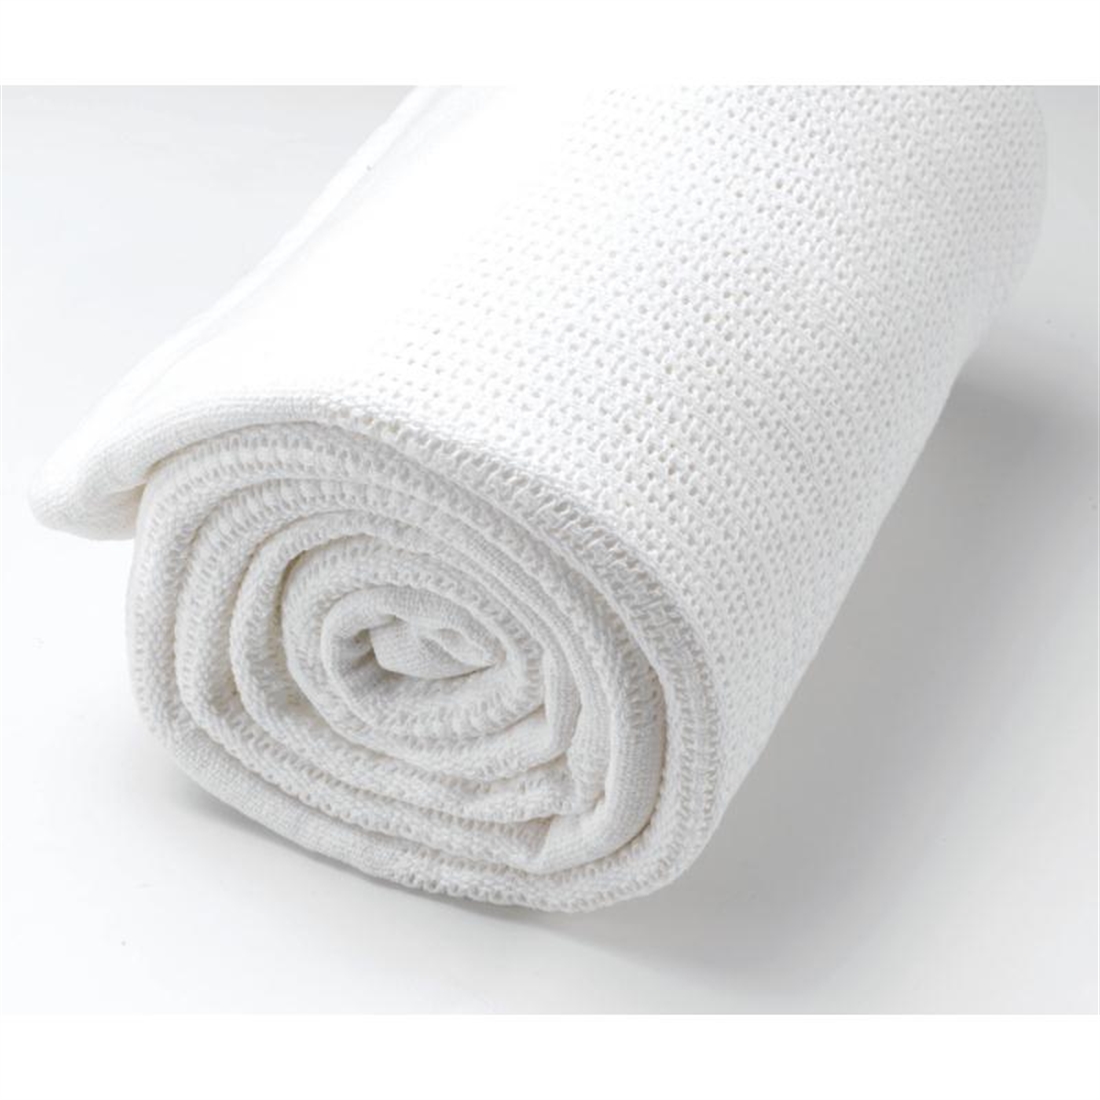 Mitre Essentials Cellular Blanket White Bunk